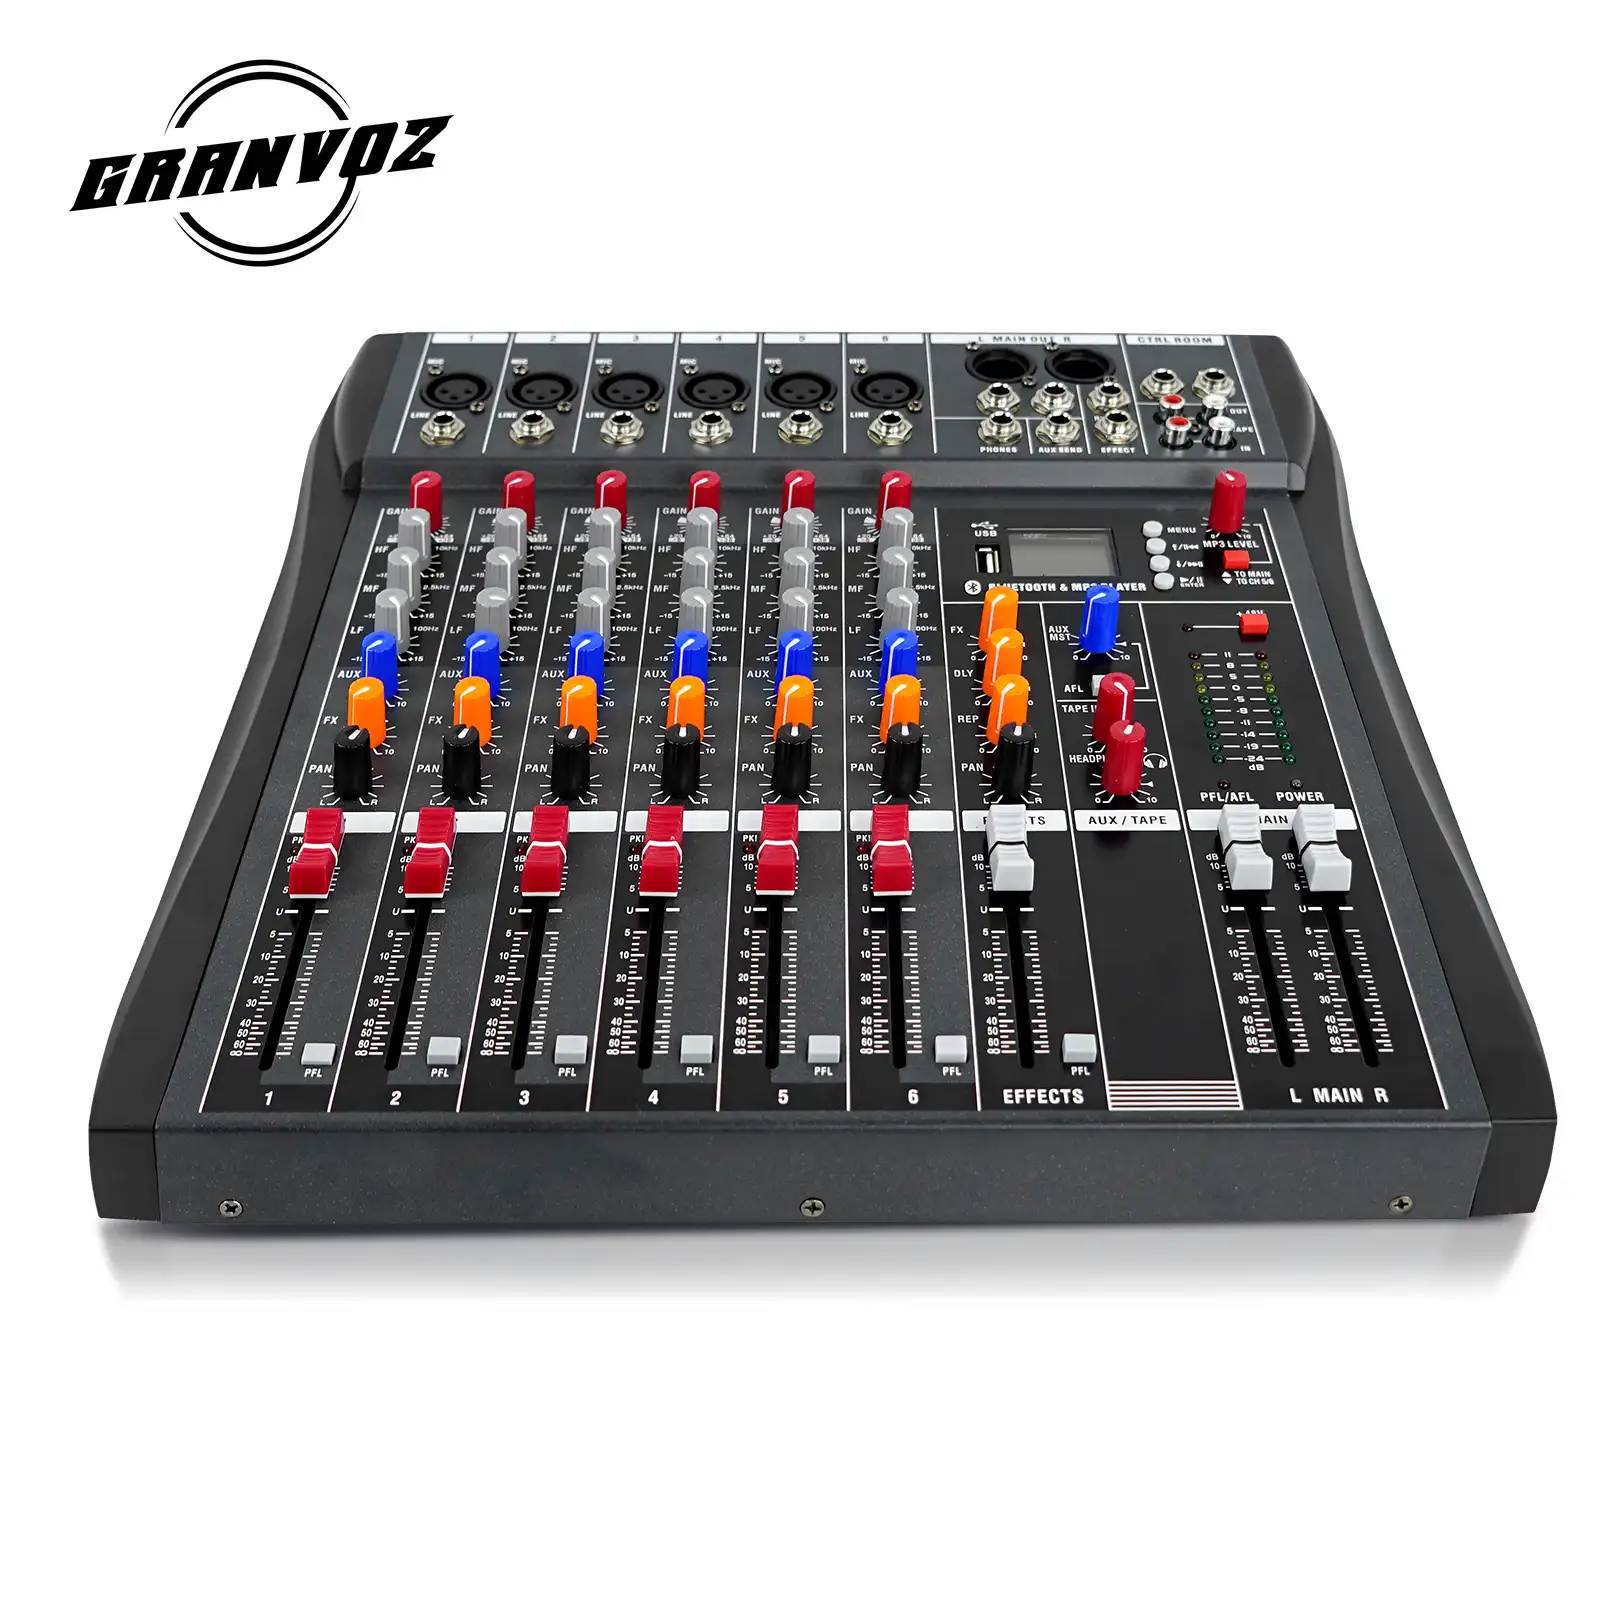 Mixer de áudio mcmyk 12 canais, dj cd players e mixer gax-4s mixer audio pro